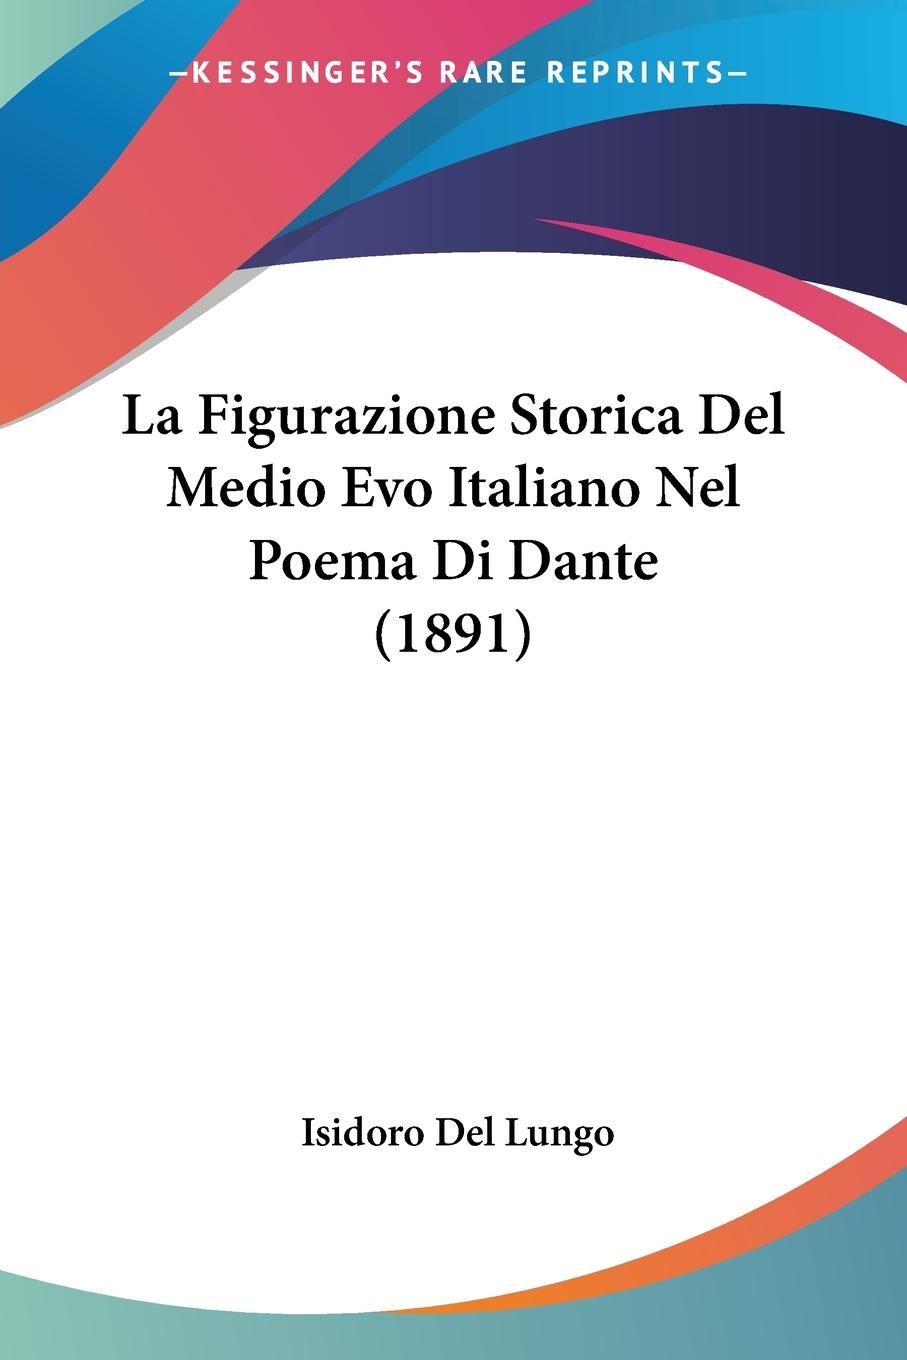 La Figurazione Storica Del Medio Evo Italiano Nel Poema Di Dante (1891) - Del Lungo, Isidoro